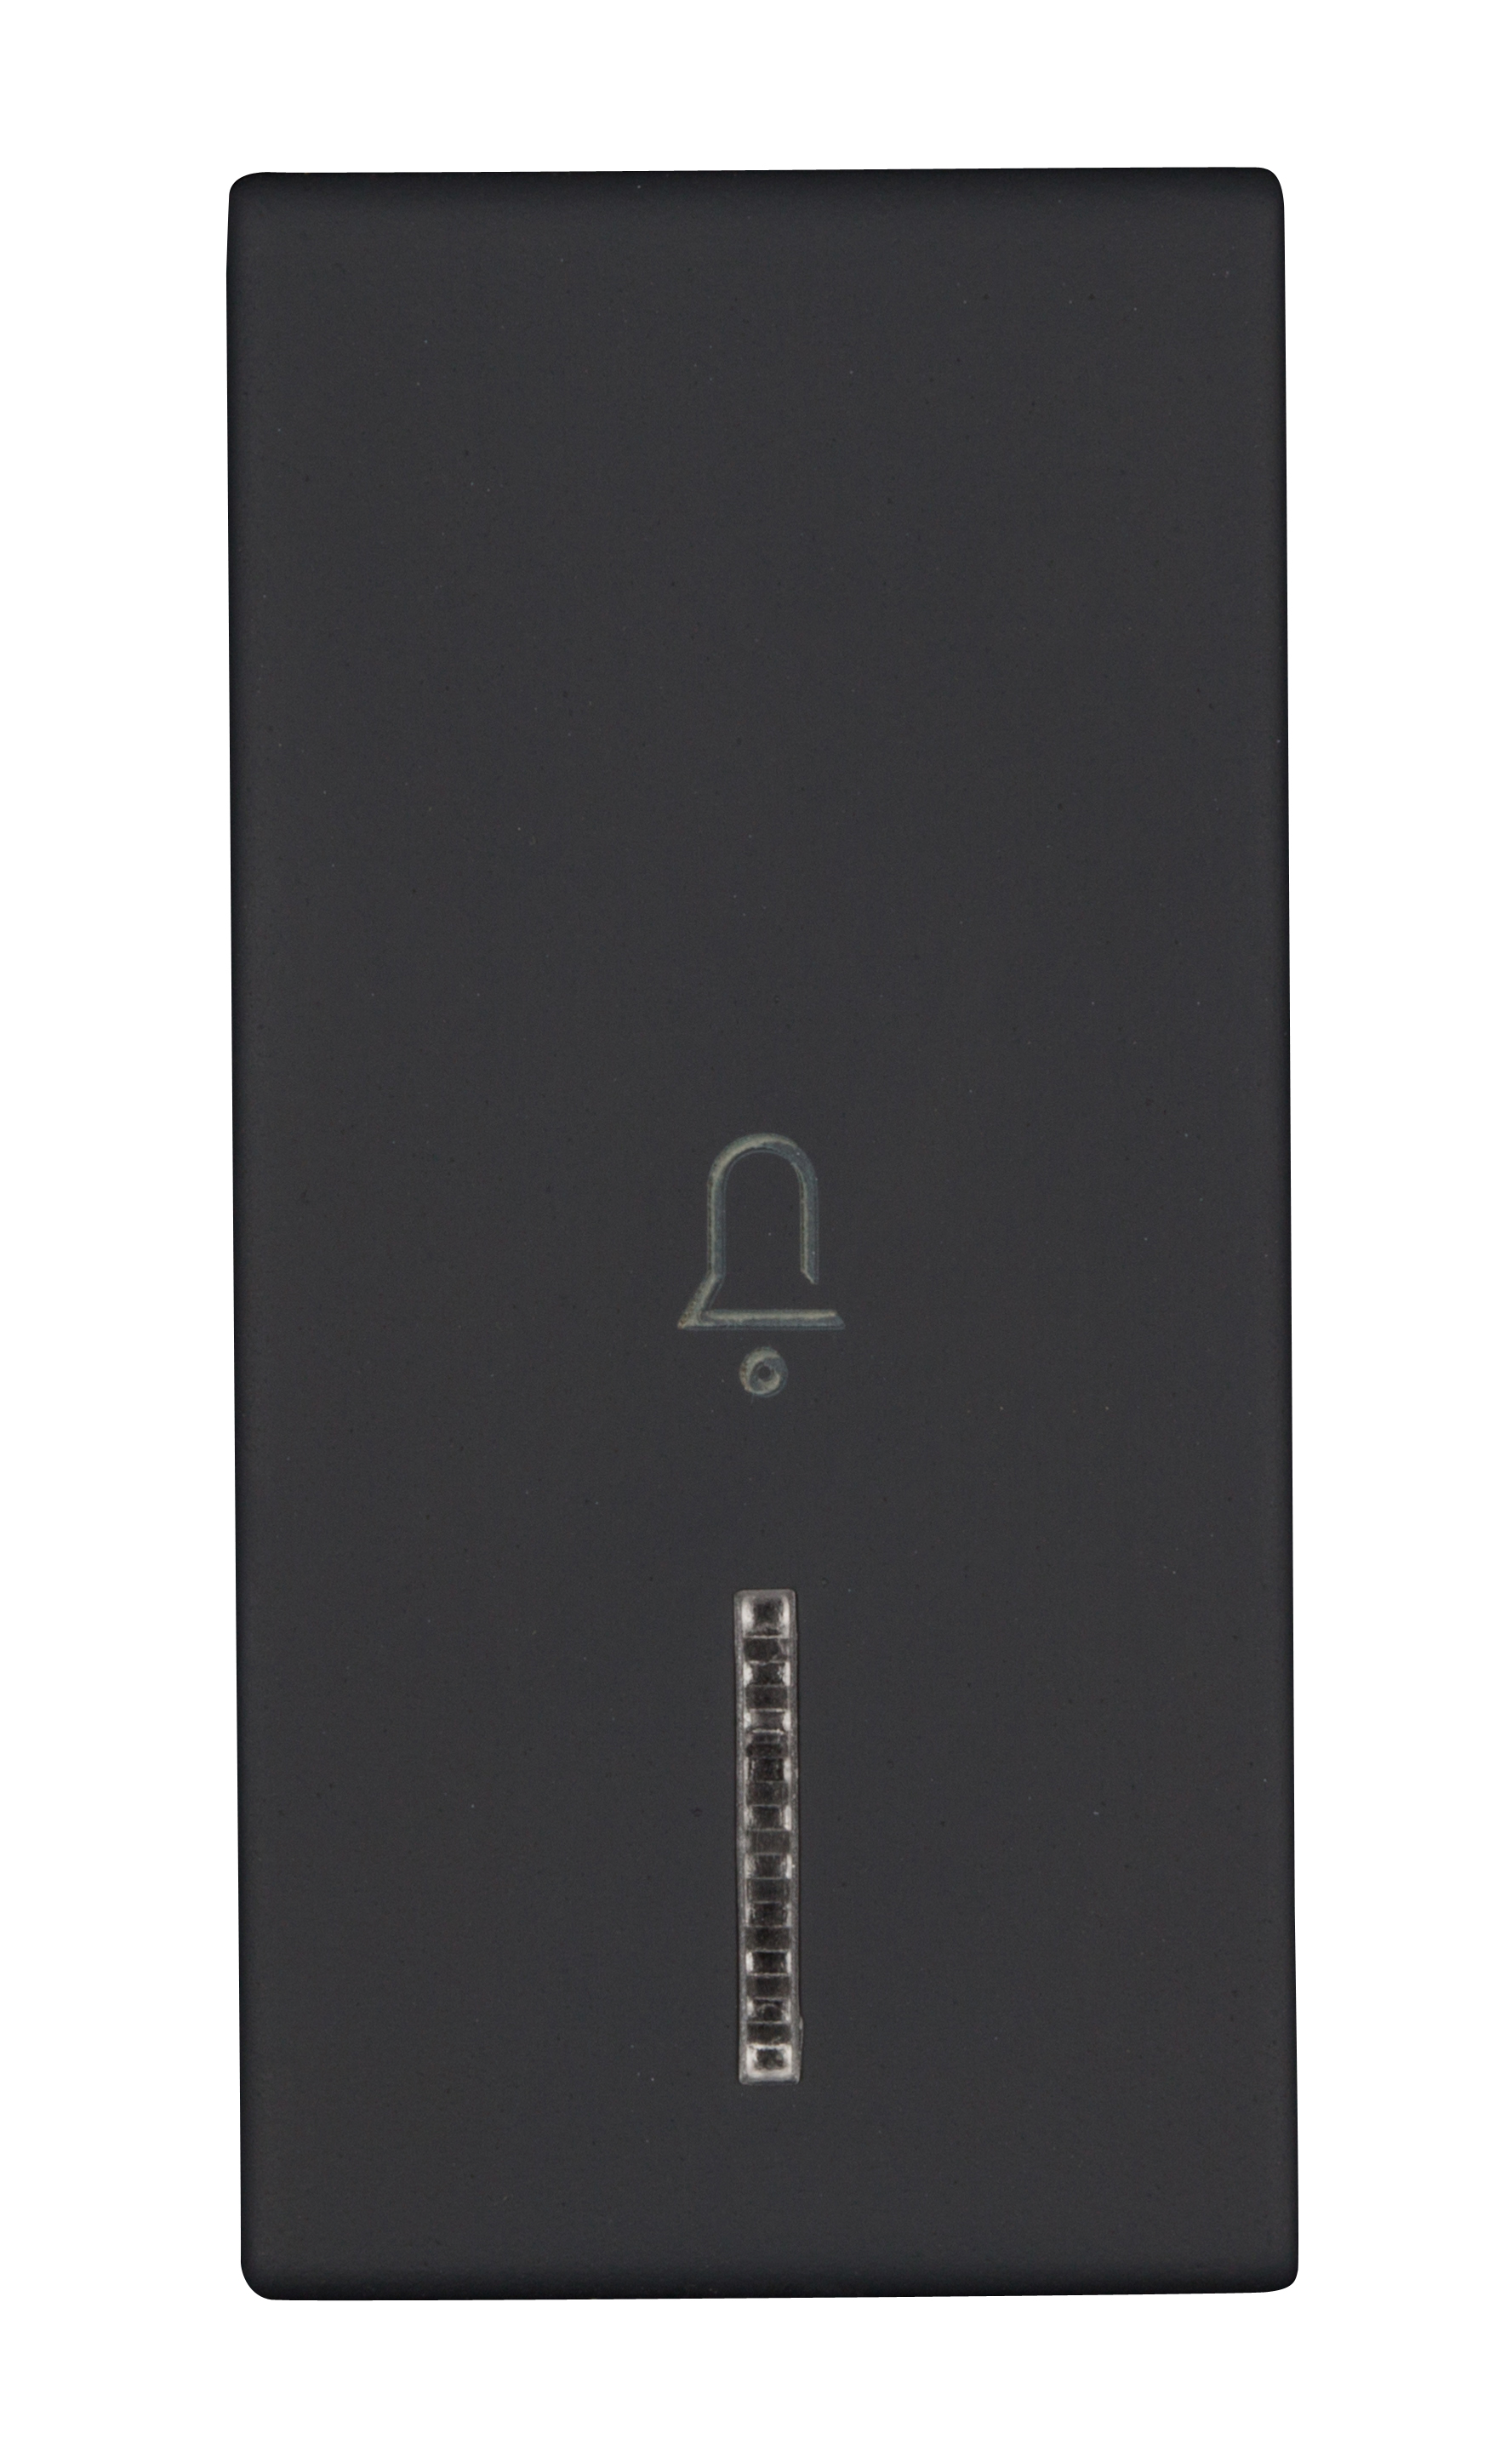 Foto: Schalterabdeckung mit Linse und Glockensymbol 1M, schwarz (c) Schrack